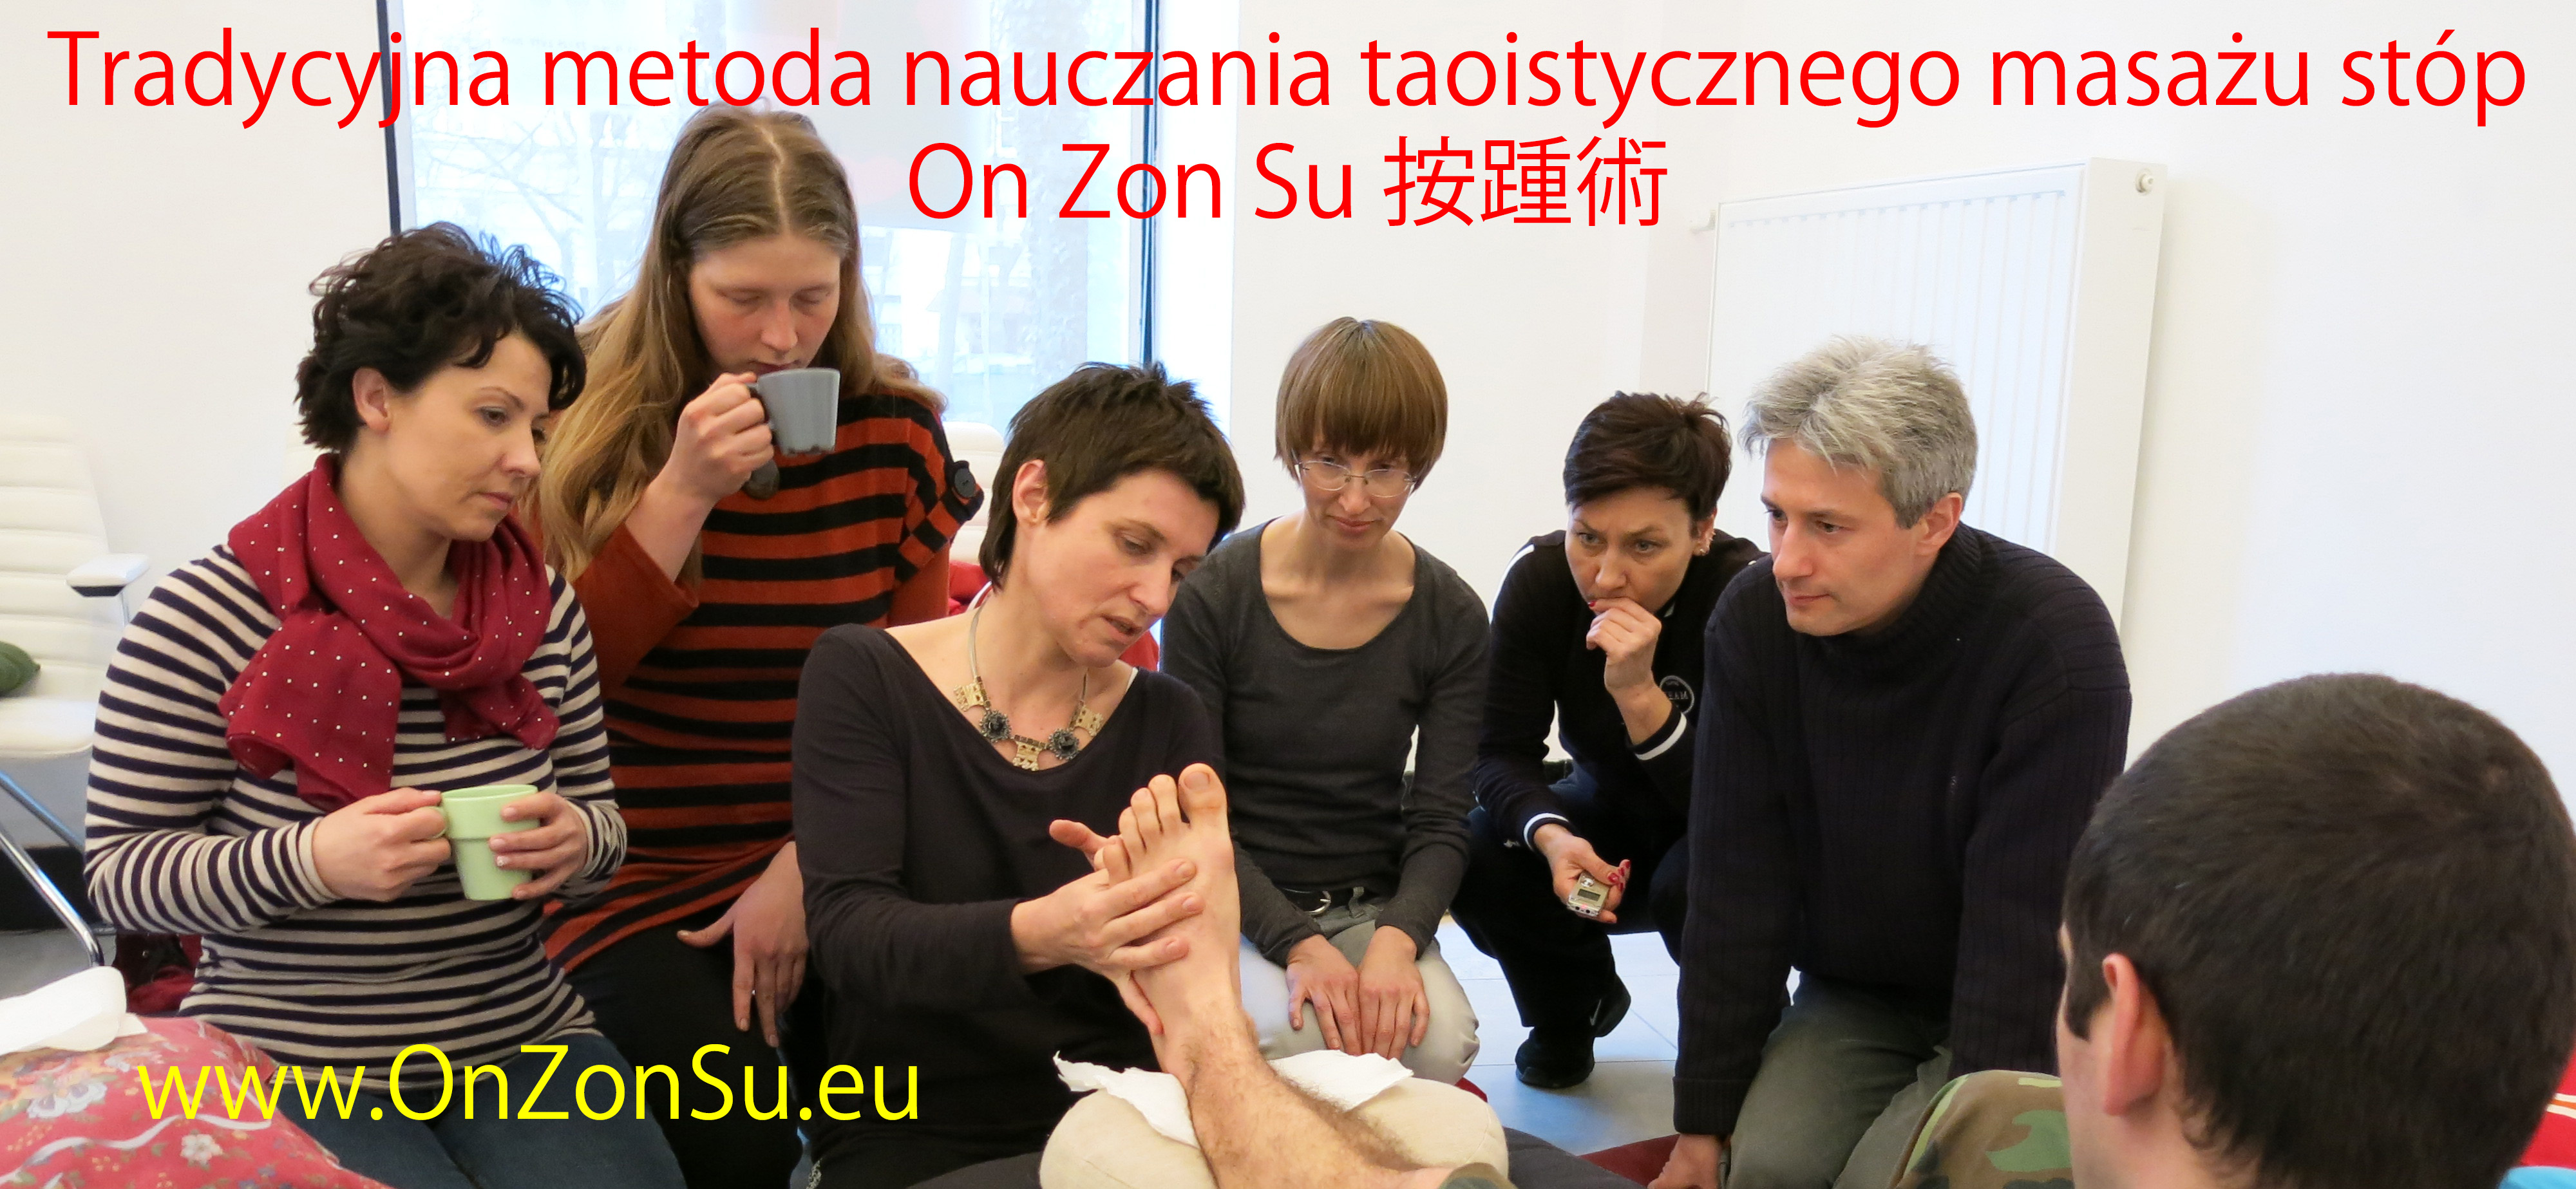 Kurs masażu stóp On Zon Su, Szkolenia refleksologii stóp - Tradycyjna metoda nauczania taoistycznego masażu stóp On Zon Su 按踵術 i jej realizacja w naszych czasach IMG_0496_MEM_2.jpg